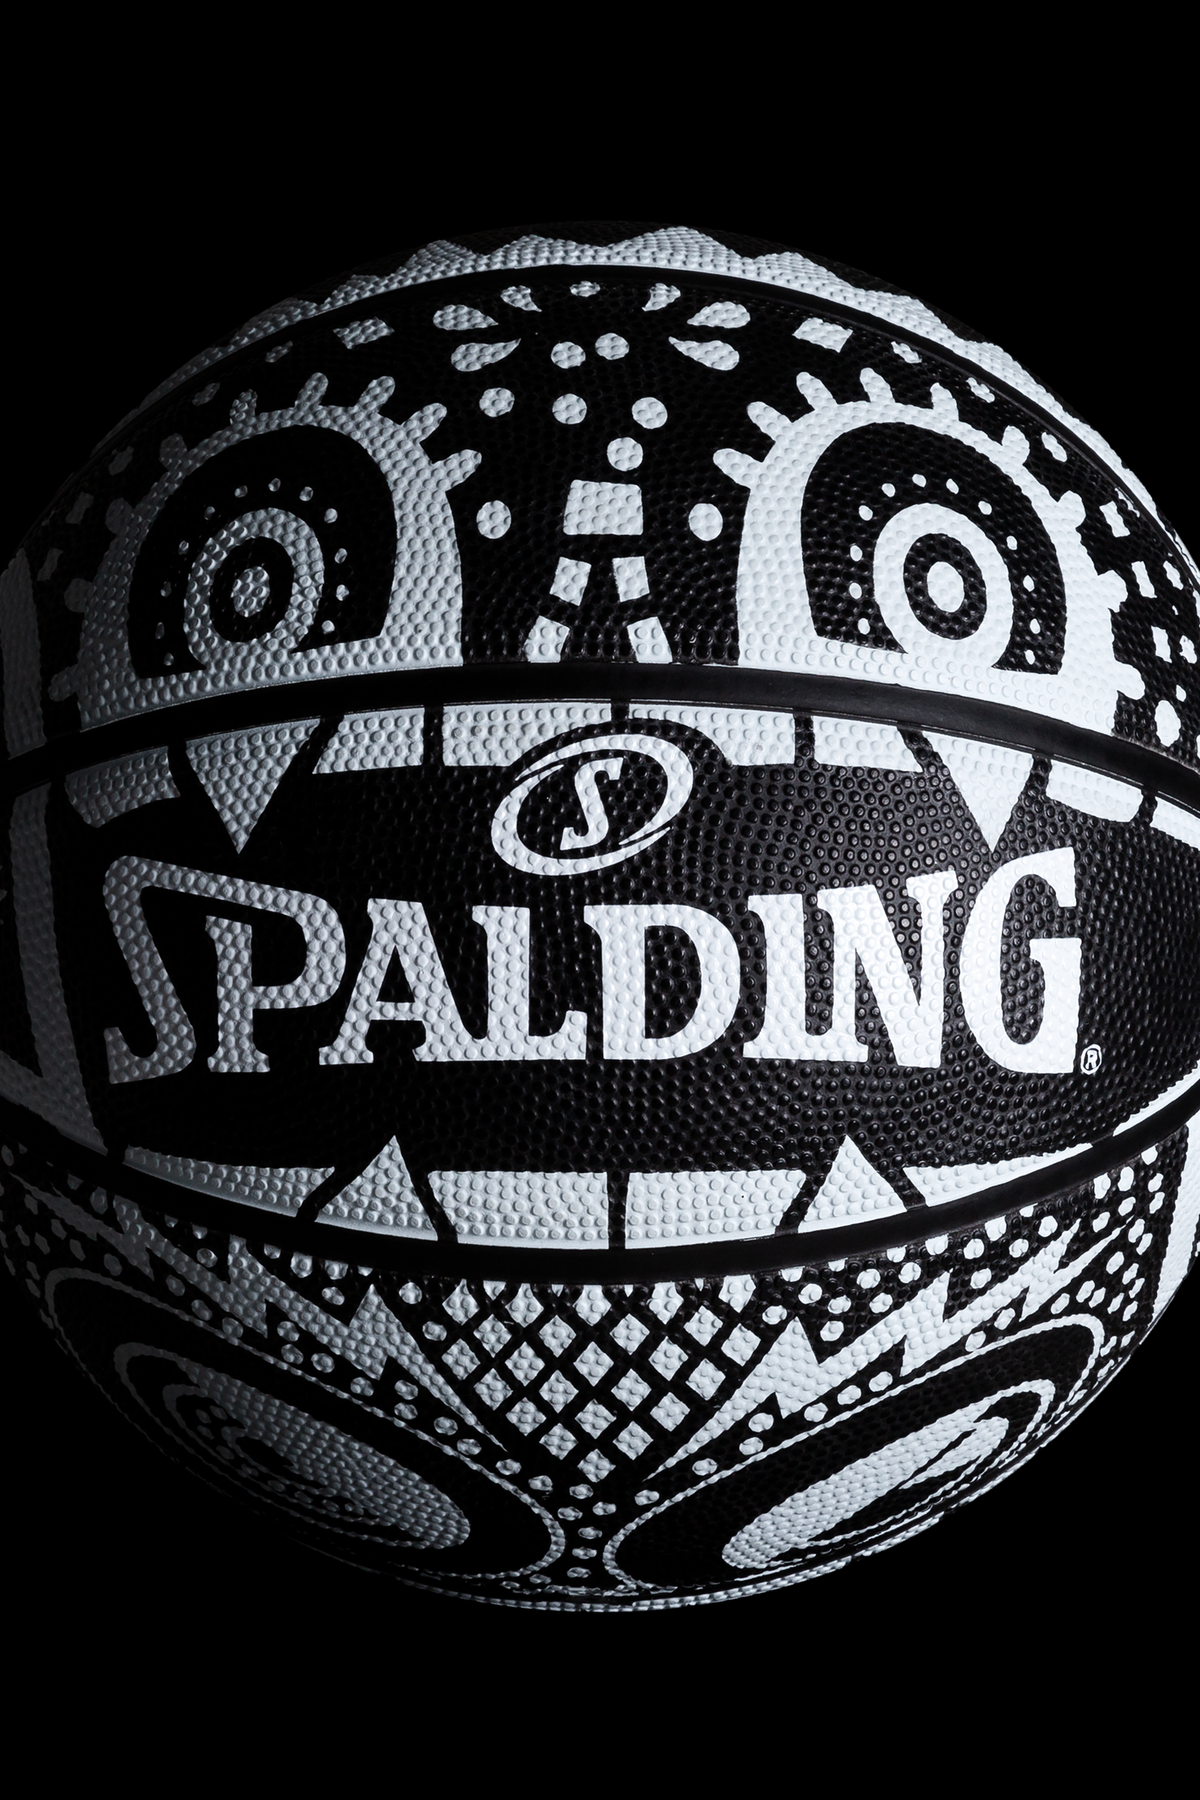 Monster Basketball Spalding logo